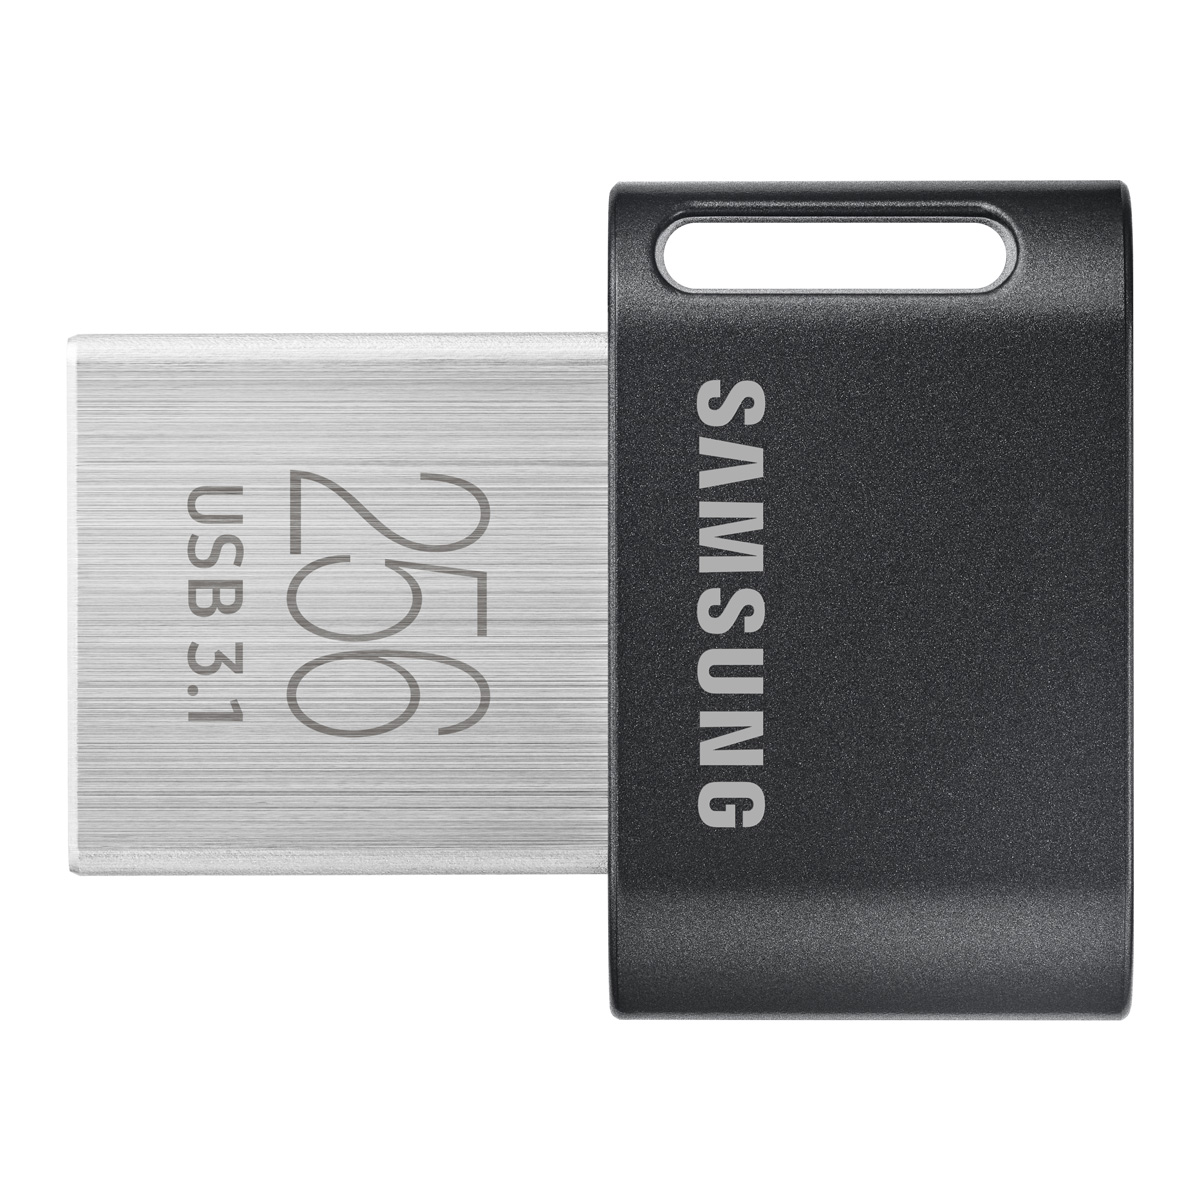 816円 お得なキャンペーンを実施中 Bestore USB メモリUSB 2.0 ハンバーガー 8GB